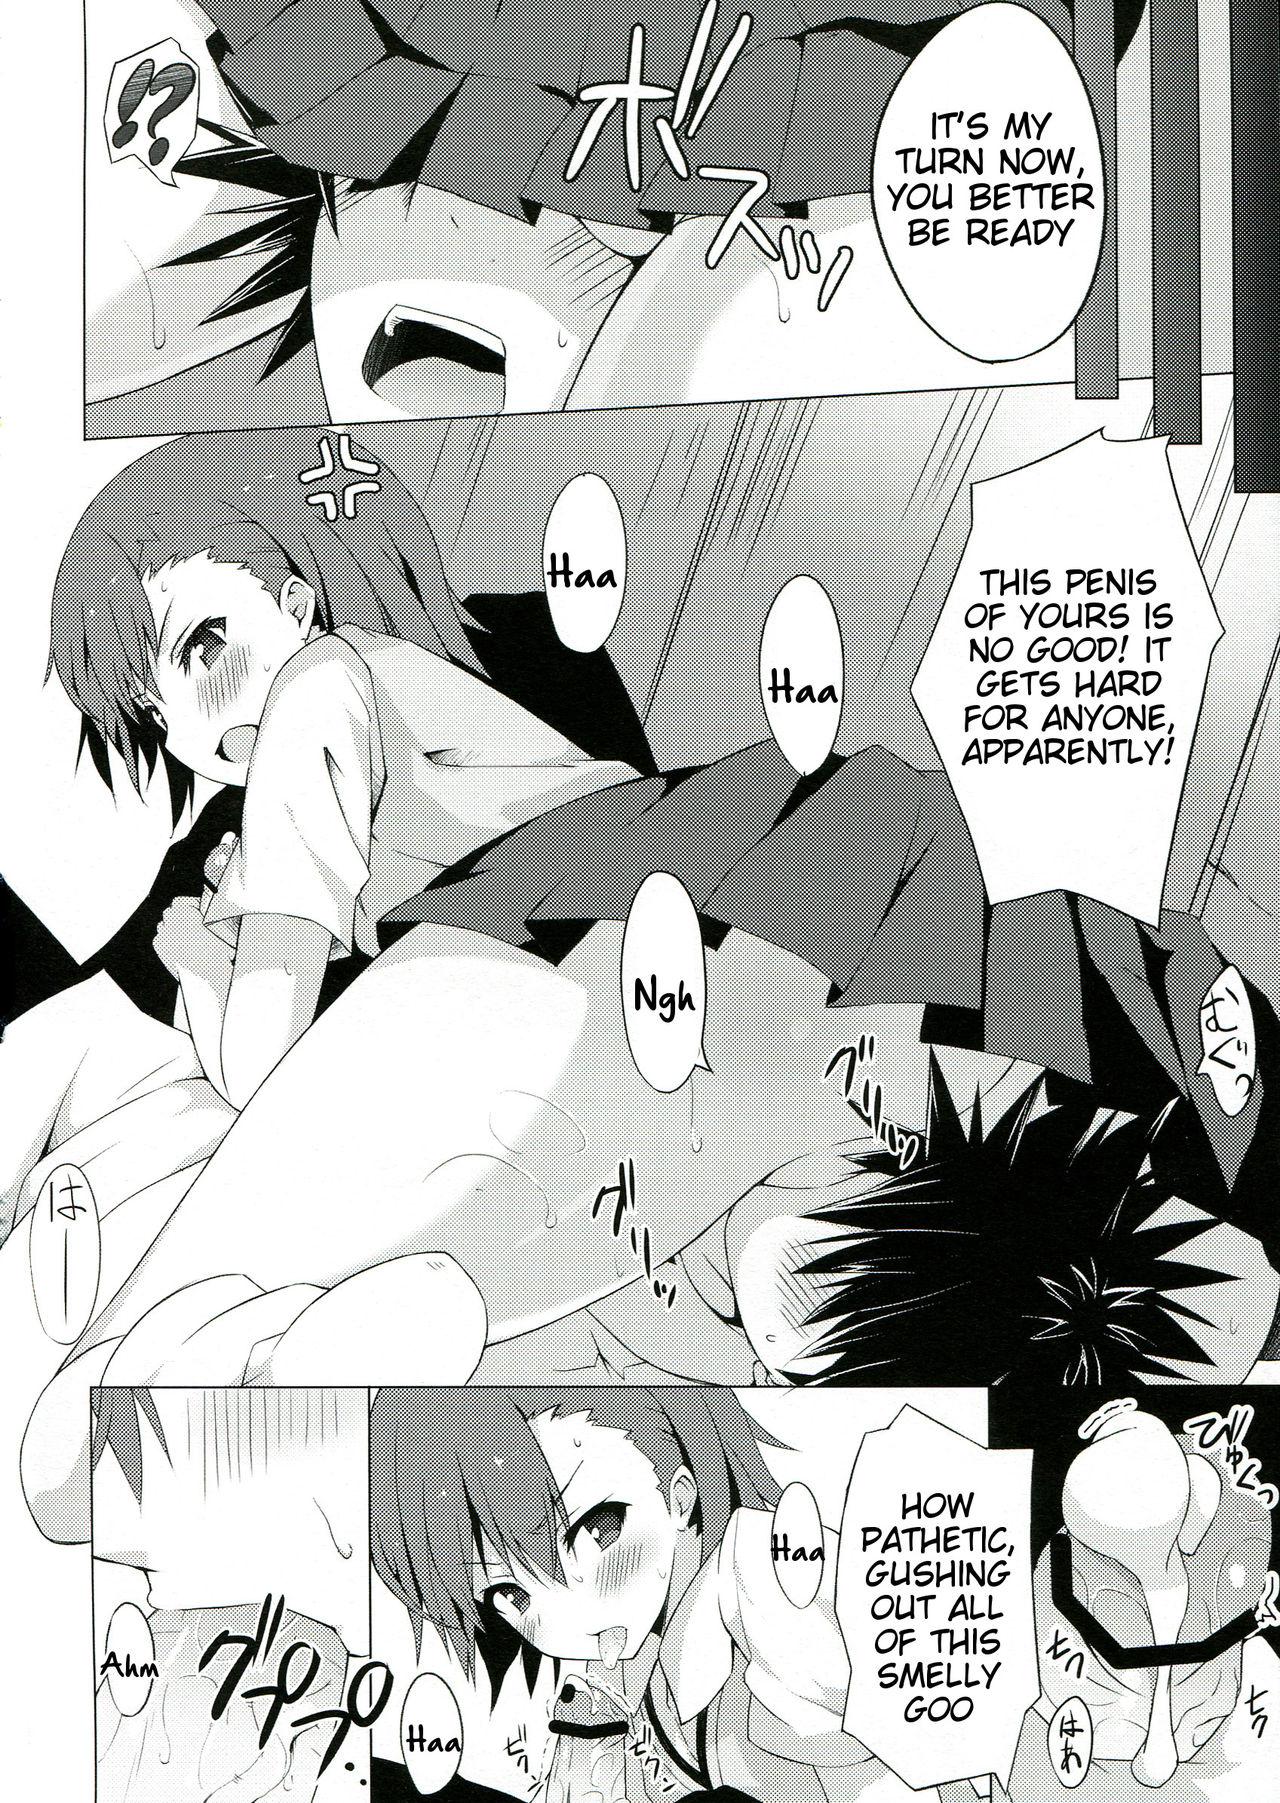 Forwomen BiriBiri Shock! - Toaru kagaku no railgun Women Sucking Dick - Page 9